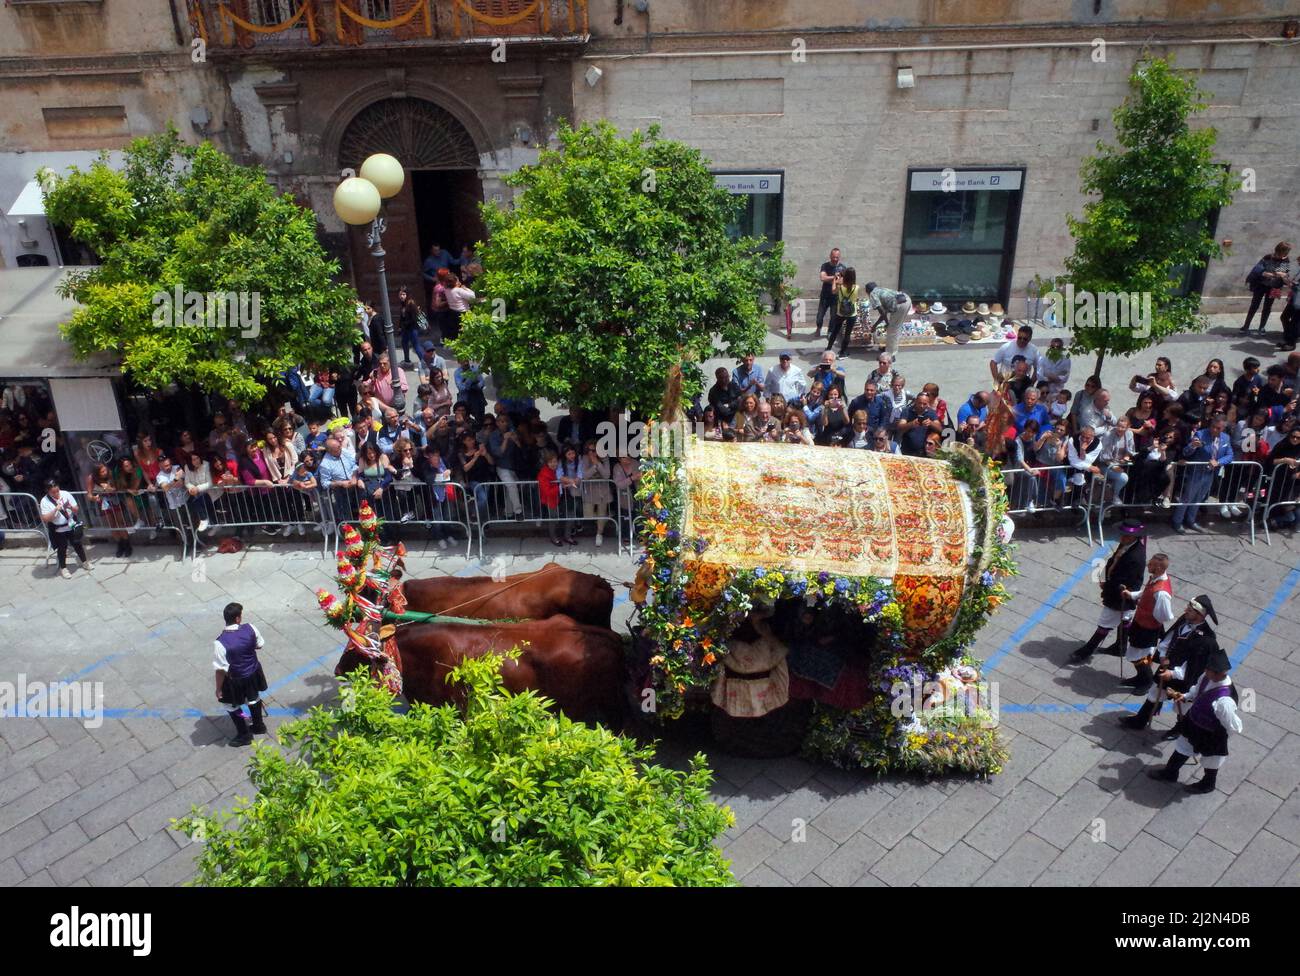 Sassari, Sardaigne, Italie. Cavalcata Sarda, défilé traditionnel de costumes et de cavaliers de toute la Sardaigne Banque D'Images